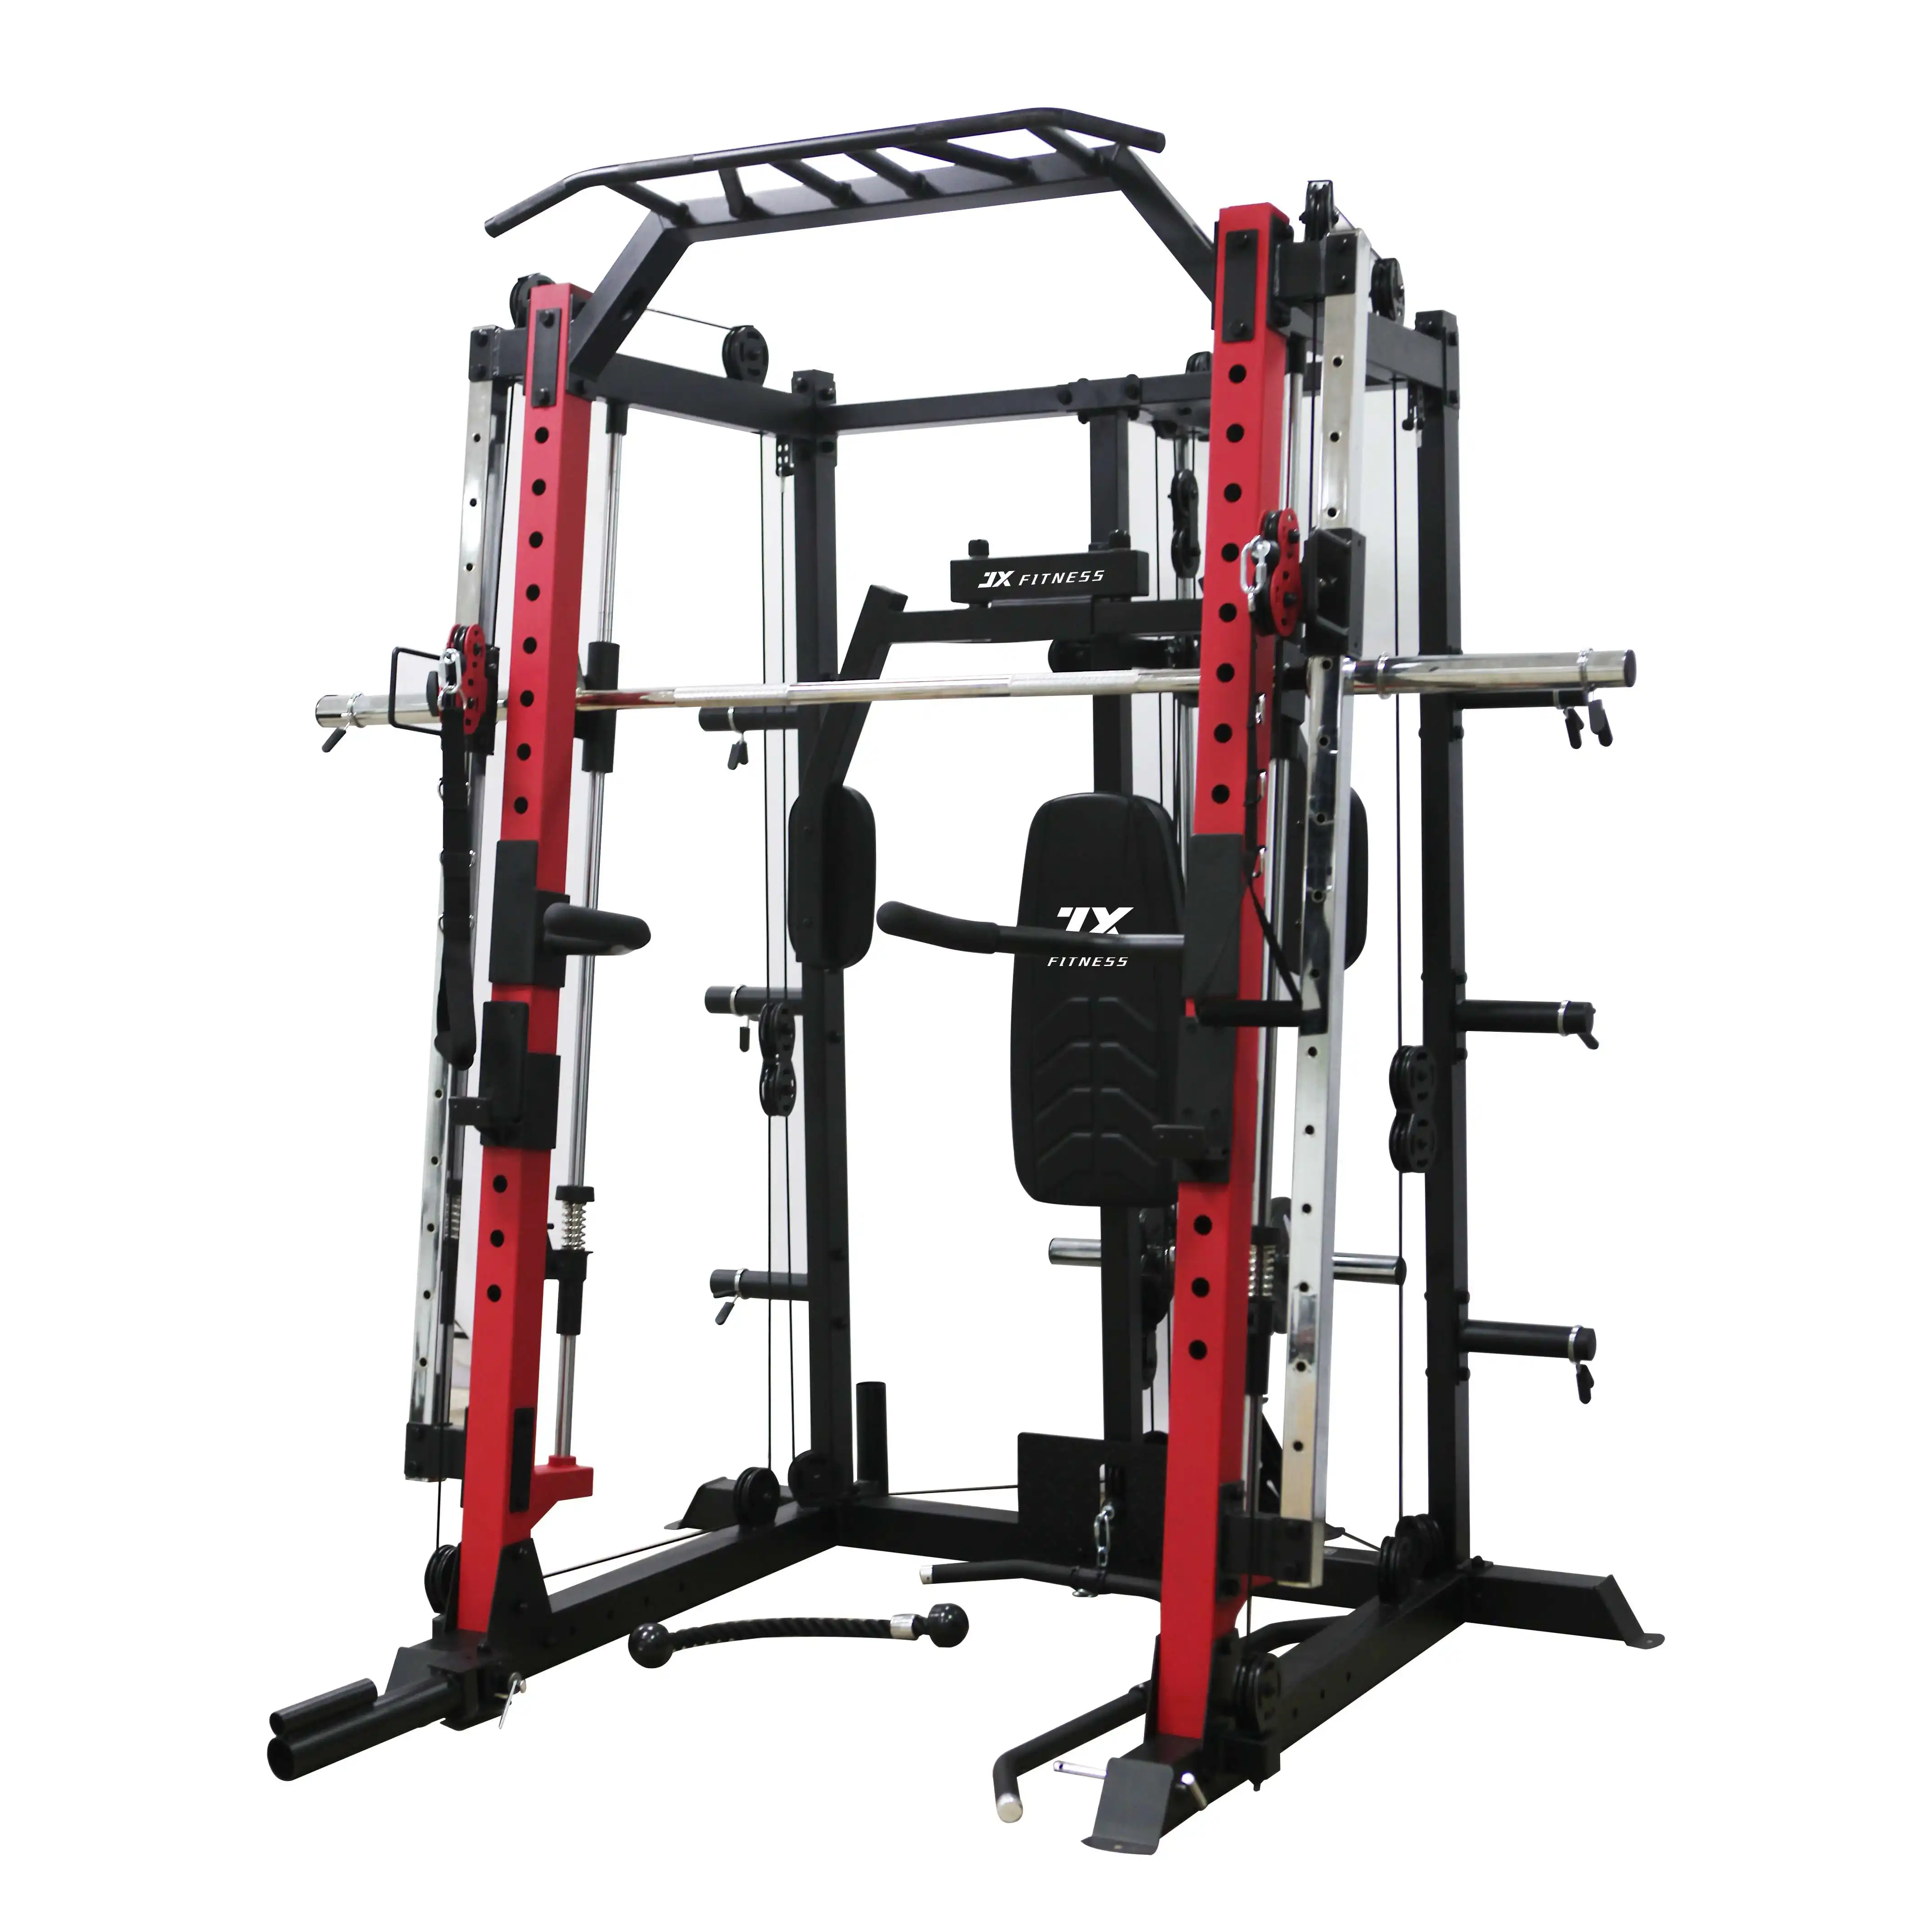 Kablo crossover maquina de ejercicios spor salonu ekipmanları çok spor ekipmanı satış de spor komple satış